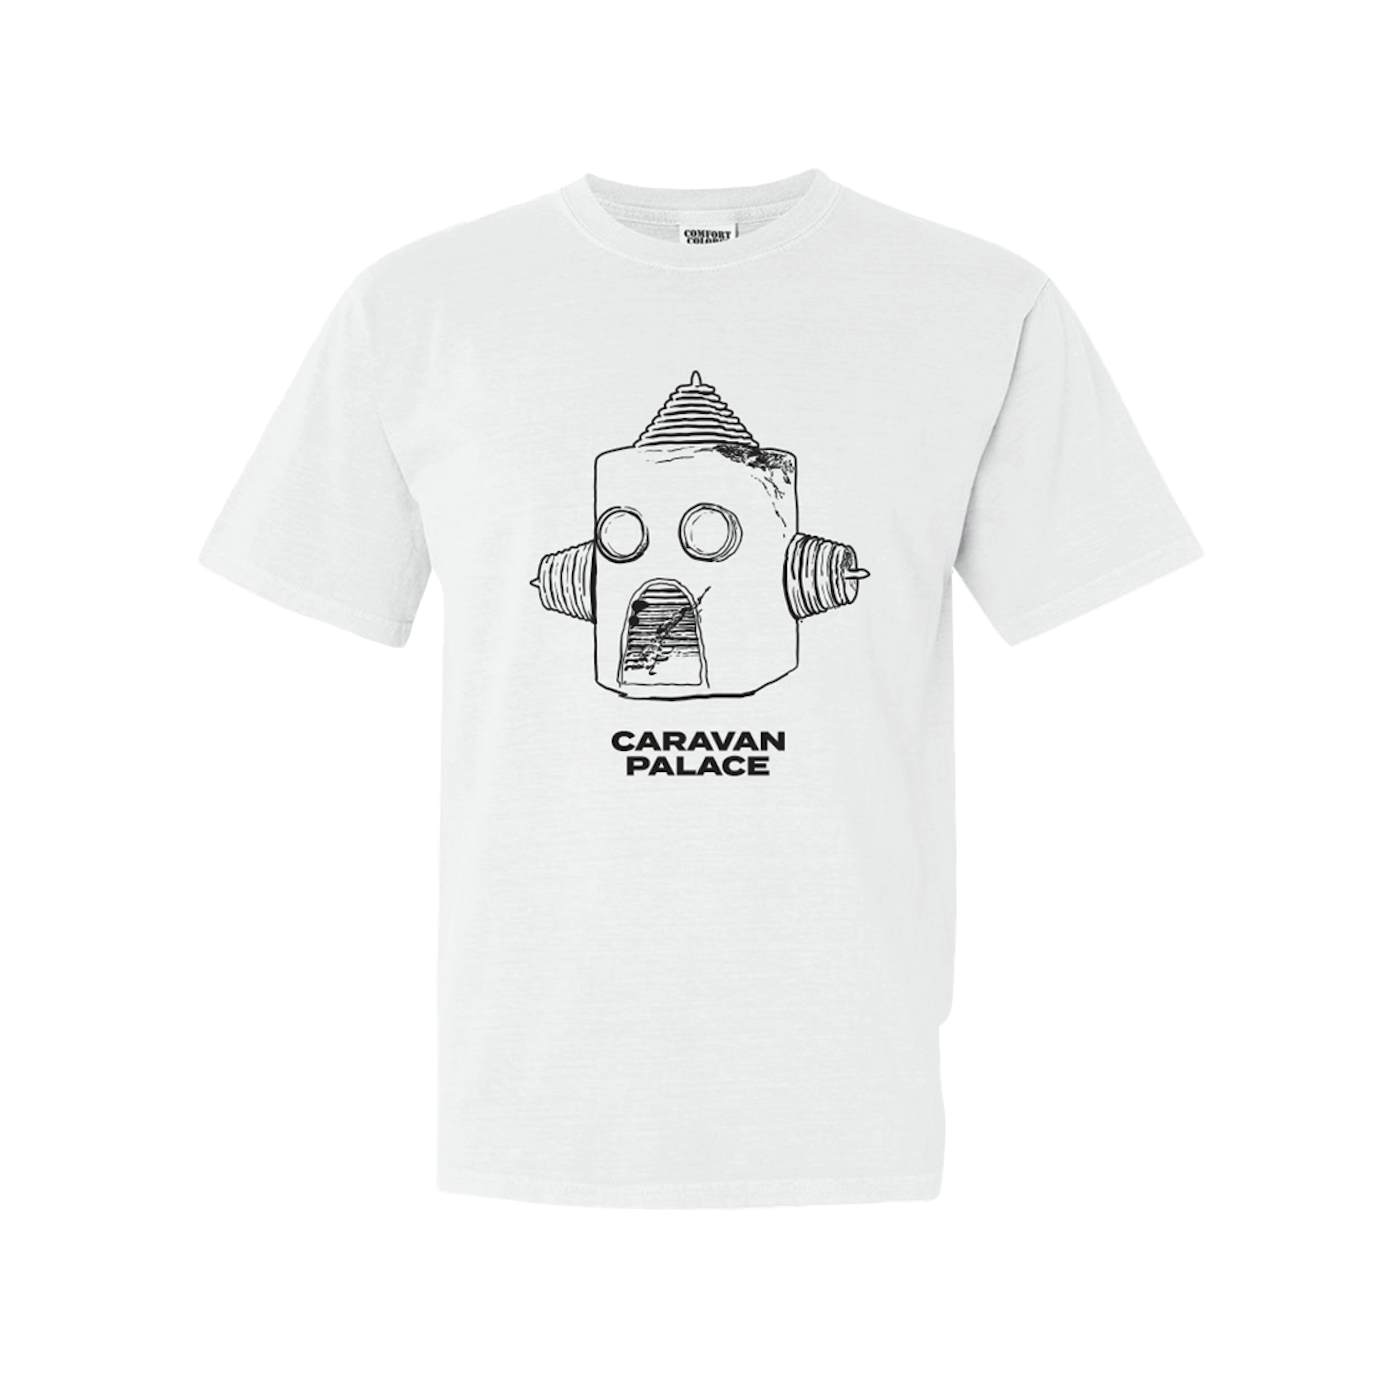 Caravan Palace Drawbot T-Shirt - Men's